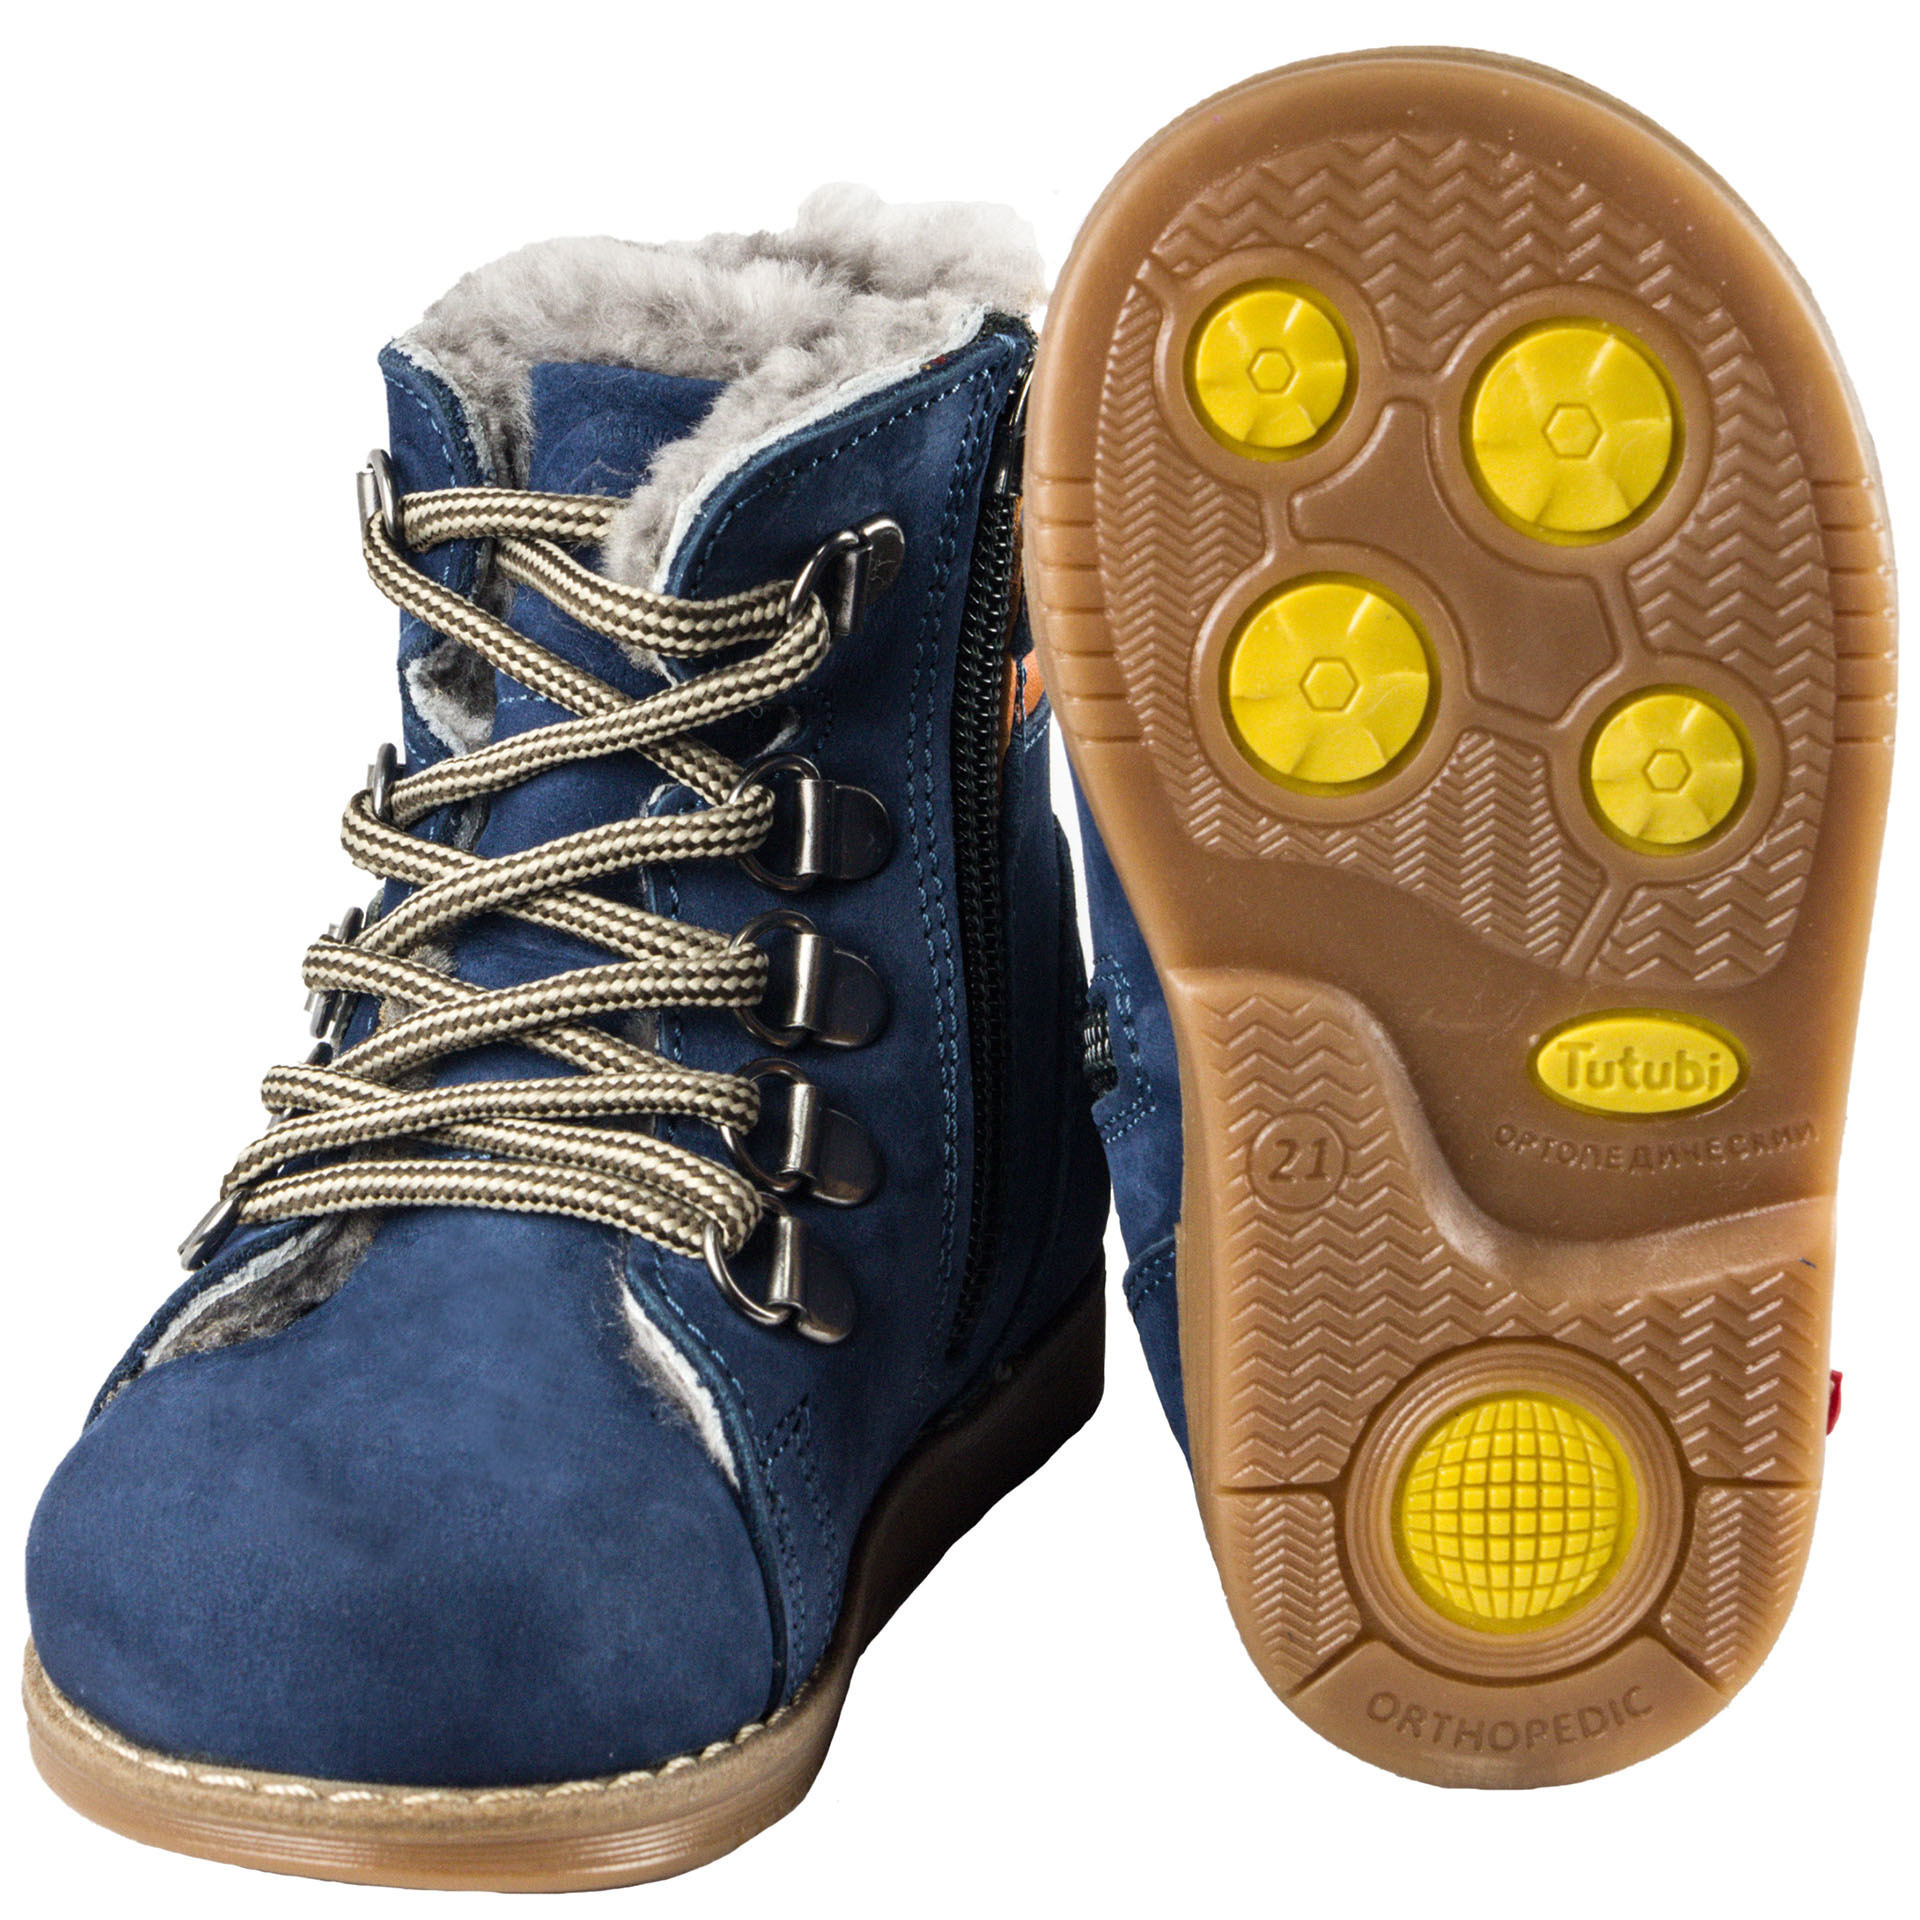 Зимние ботинки детские (1267) материал Нубук, цвет Синий  для мальчиков 26-30 размеры – Sole Kids. Фото 2